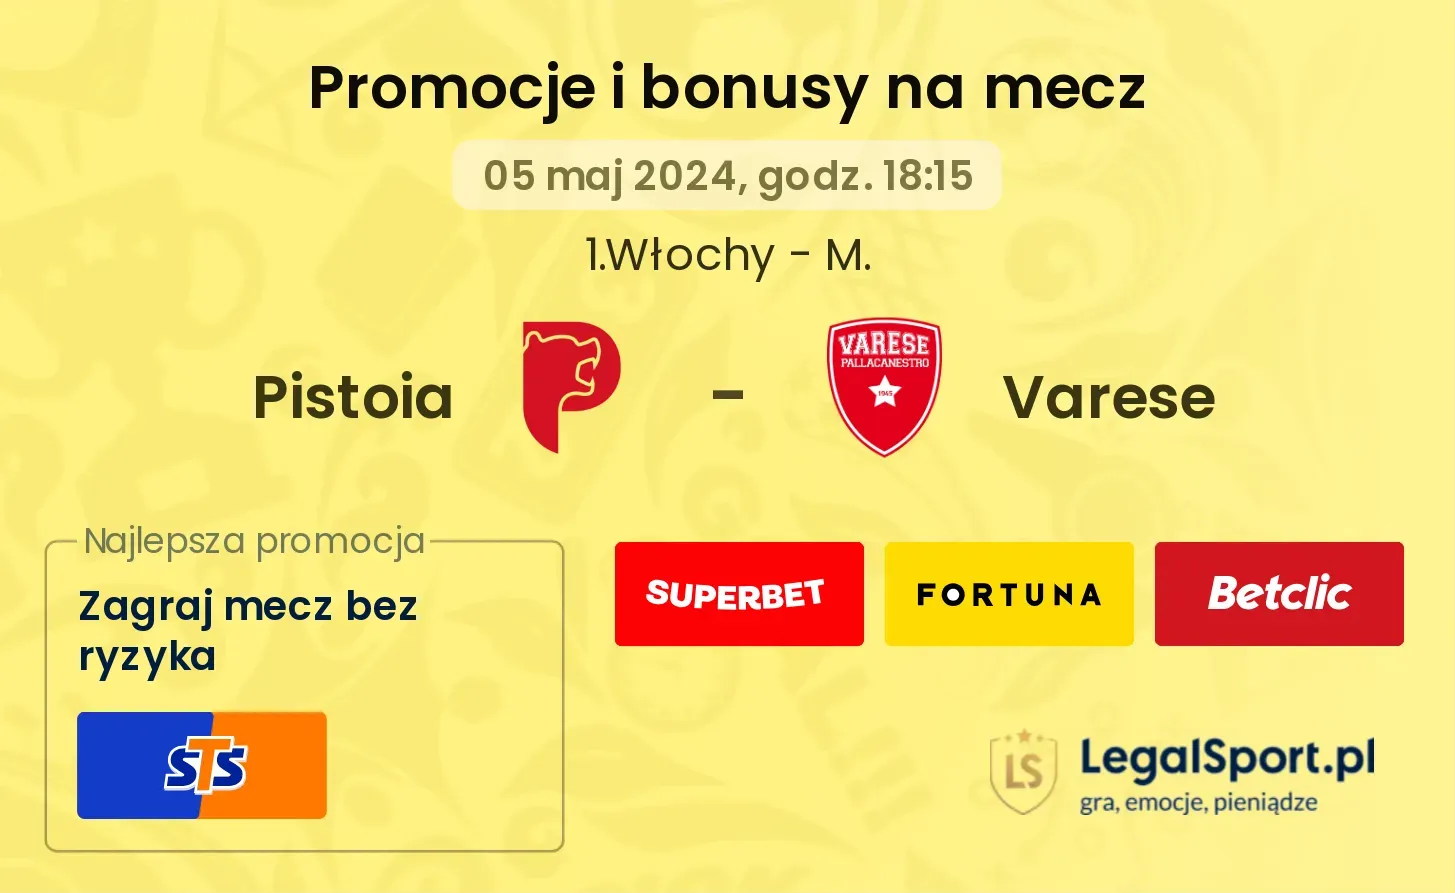 Pistoia - Varese promocje bonusy na mecz